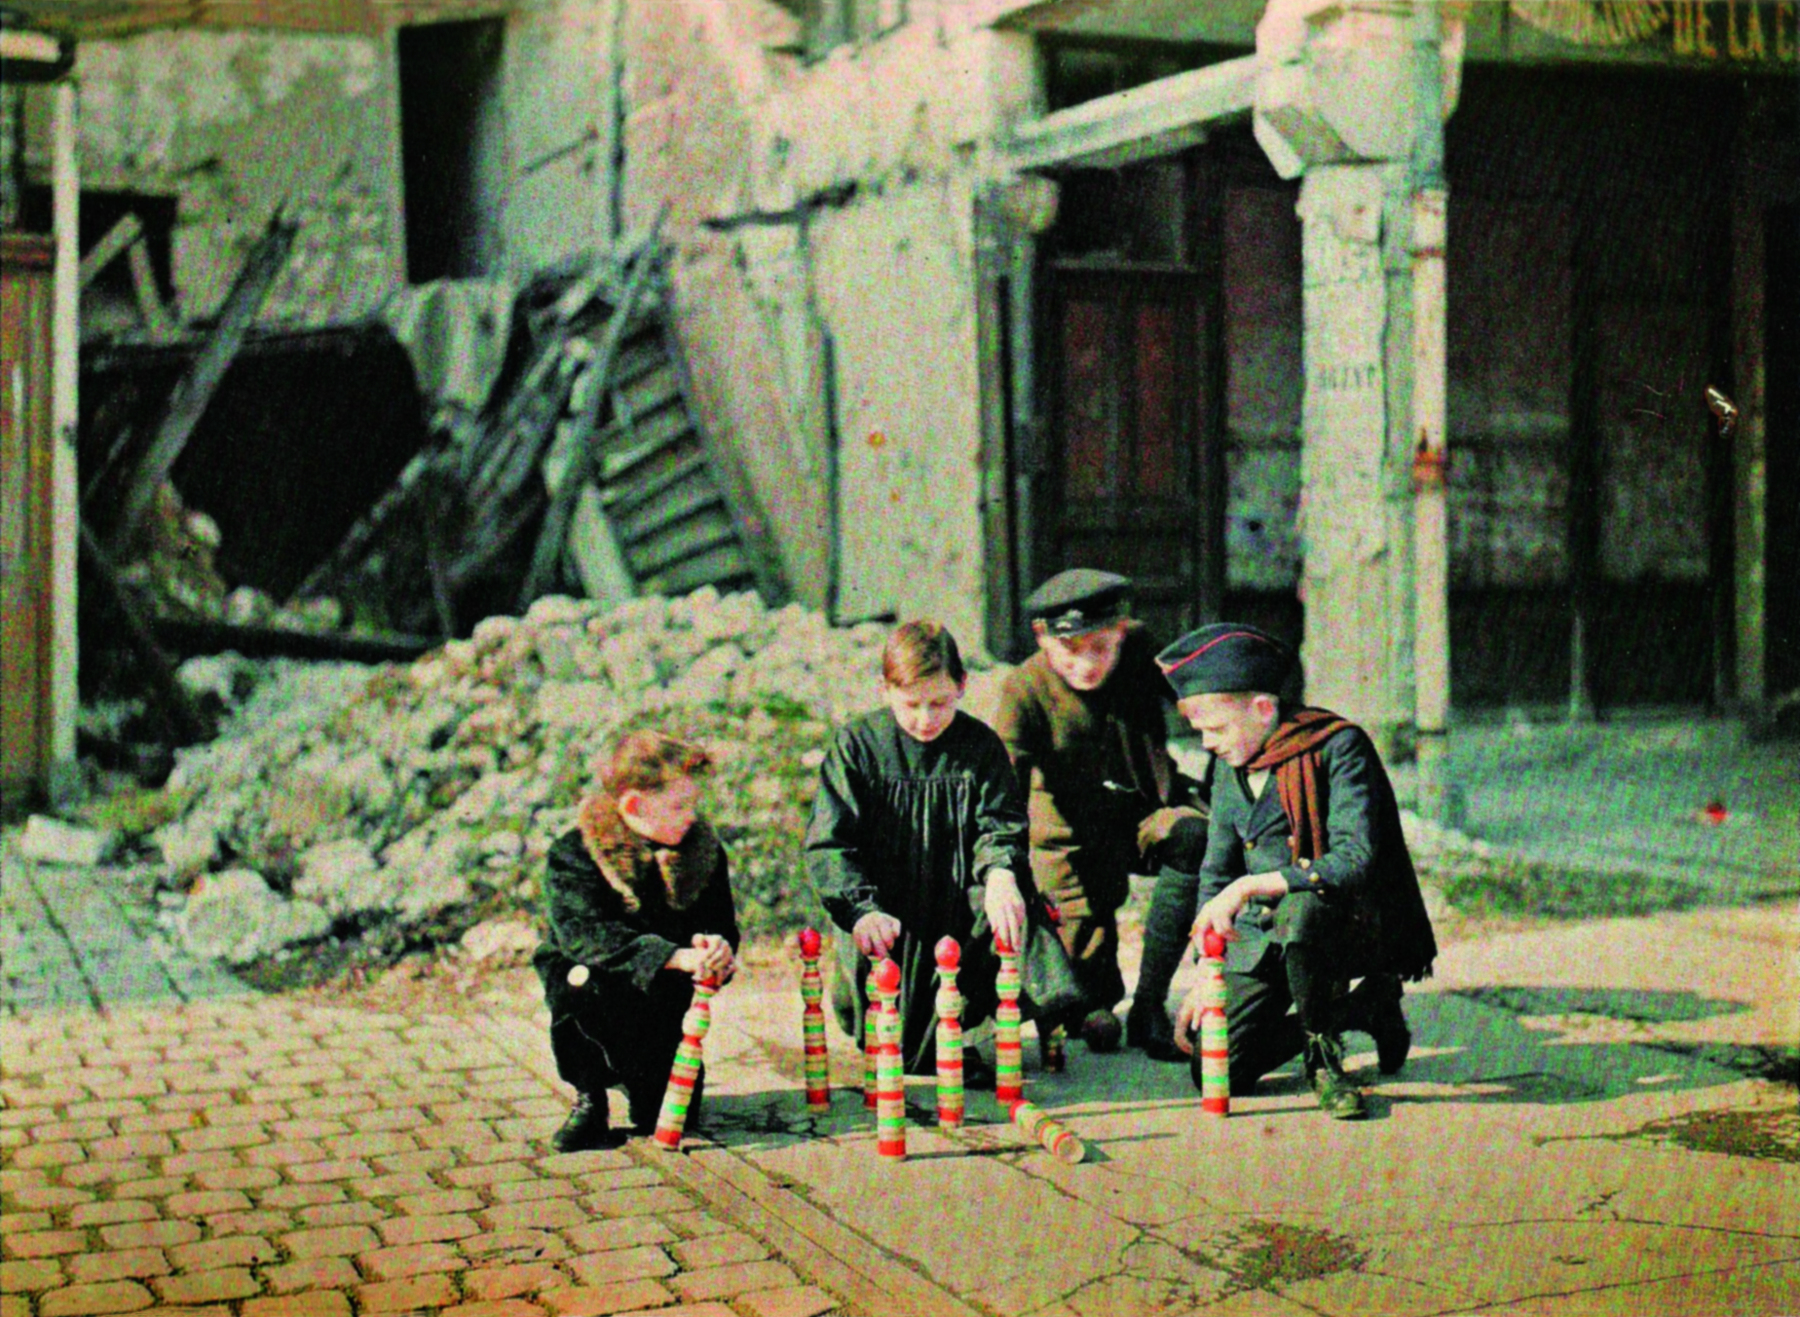 Fotografia. No centro, um grupo de meninos agachados ao redor de um brinquedo com torres verticais coloridas. Em segundo plano, os destroços de uma construção.